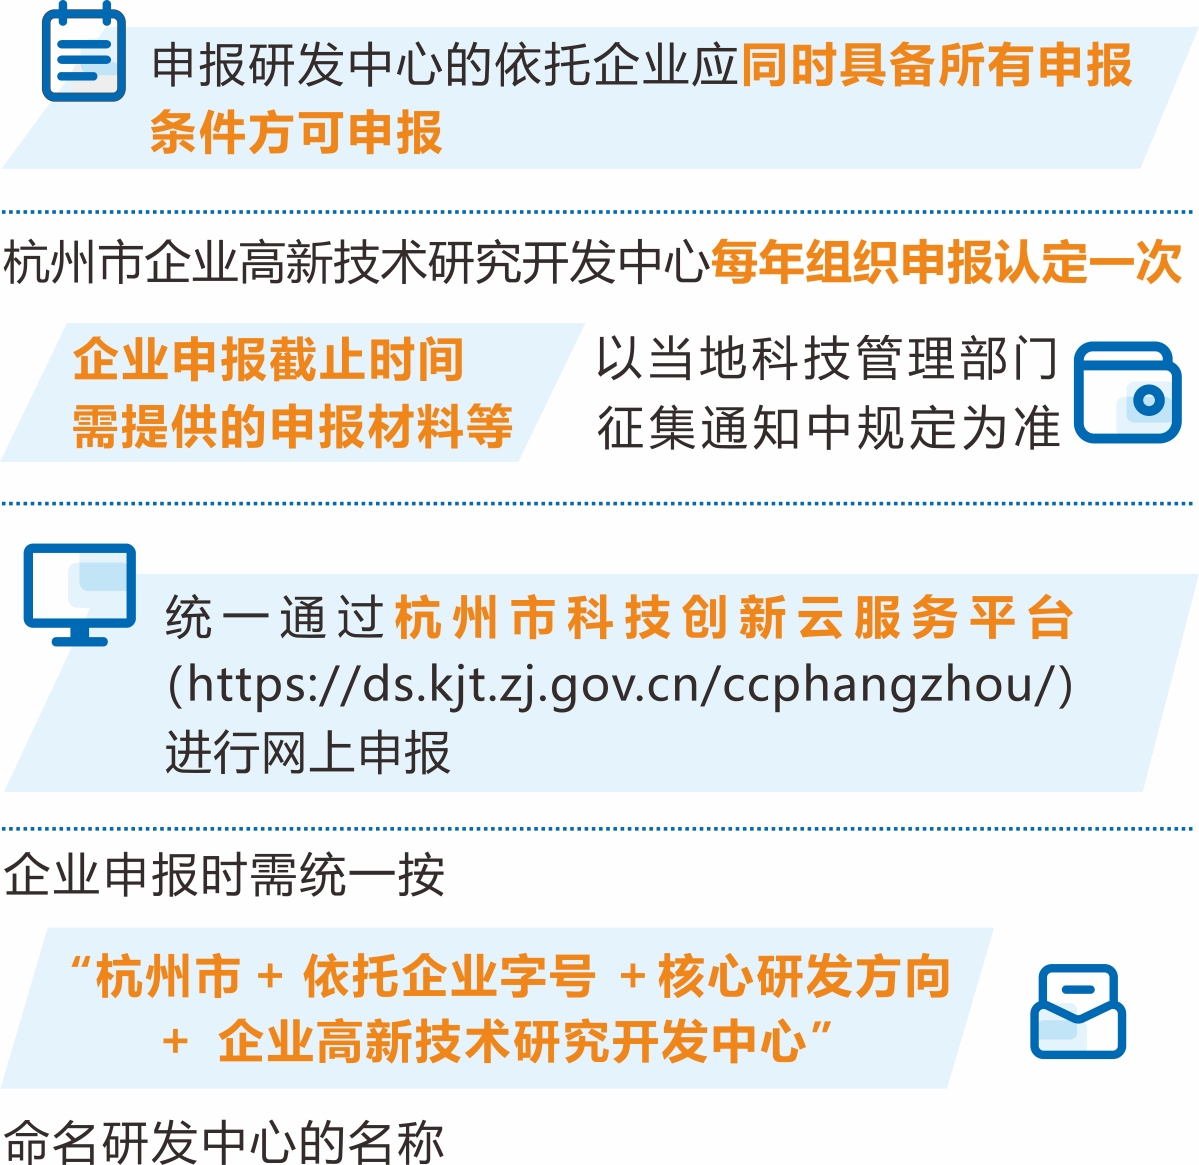 《杭州市企业高新技术研究开发中心管理办法》解读